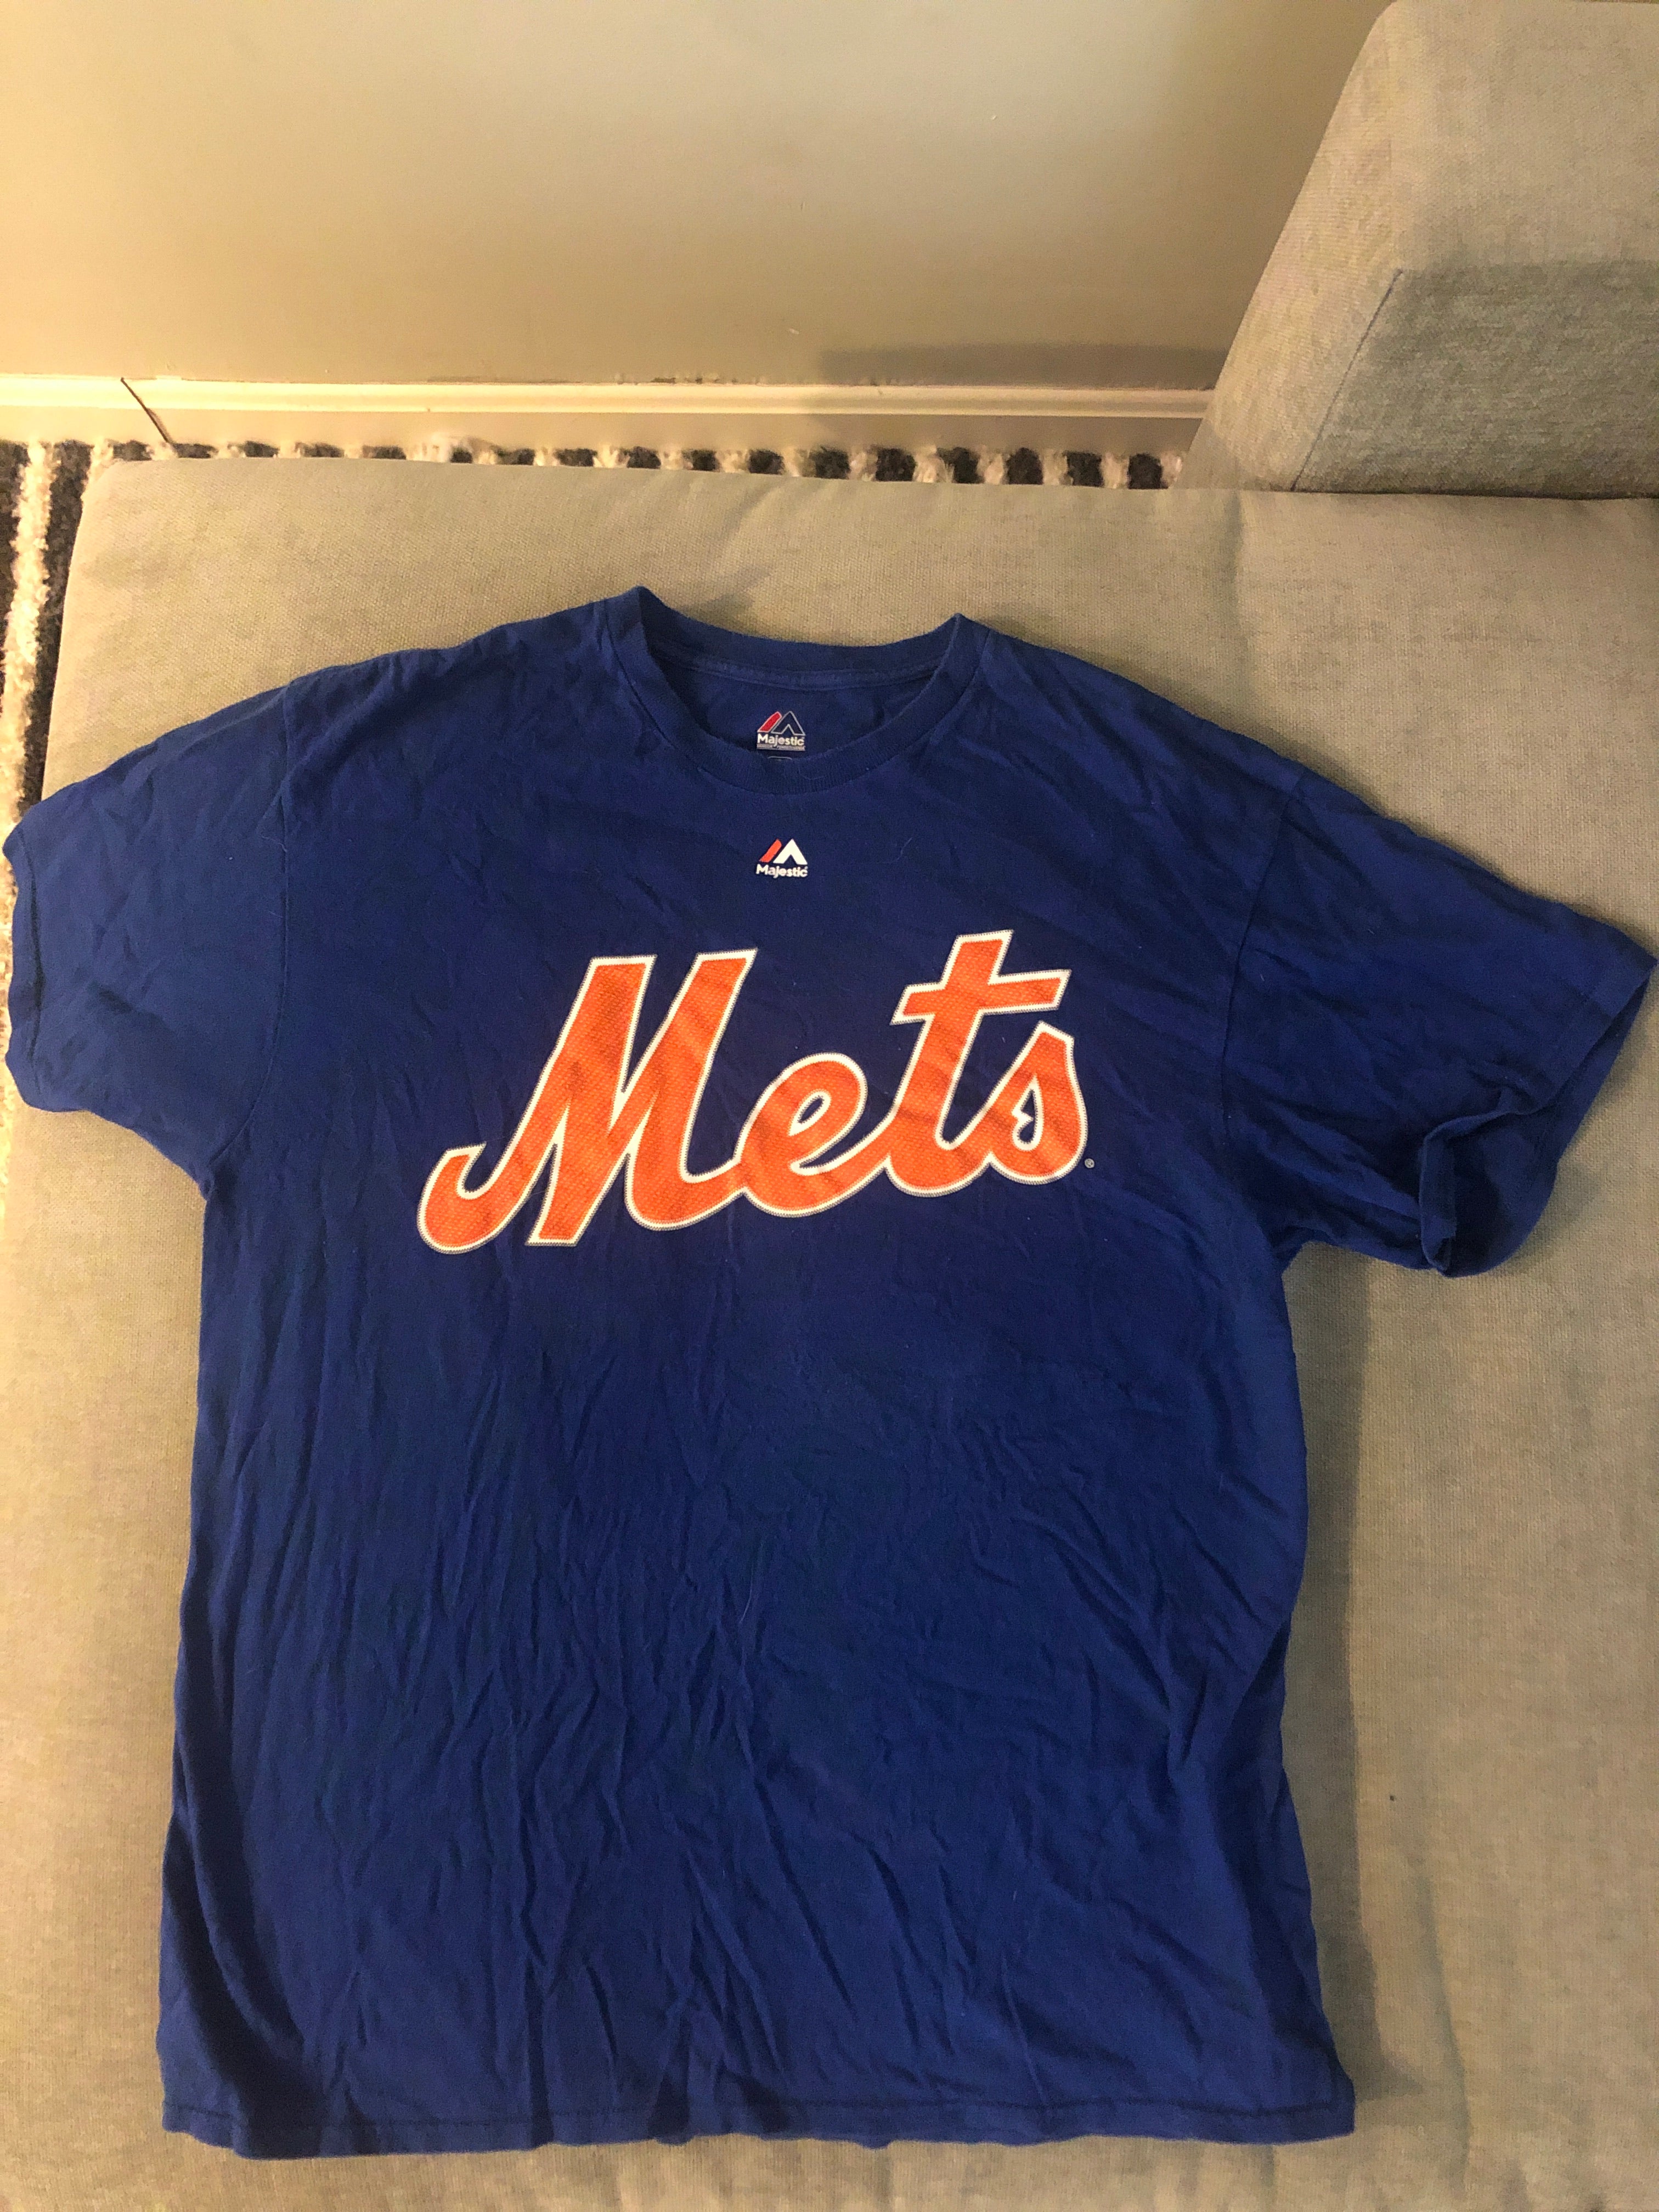 NY METS, Shirts